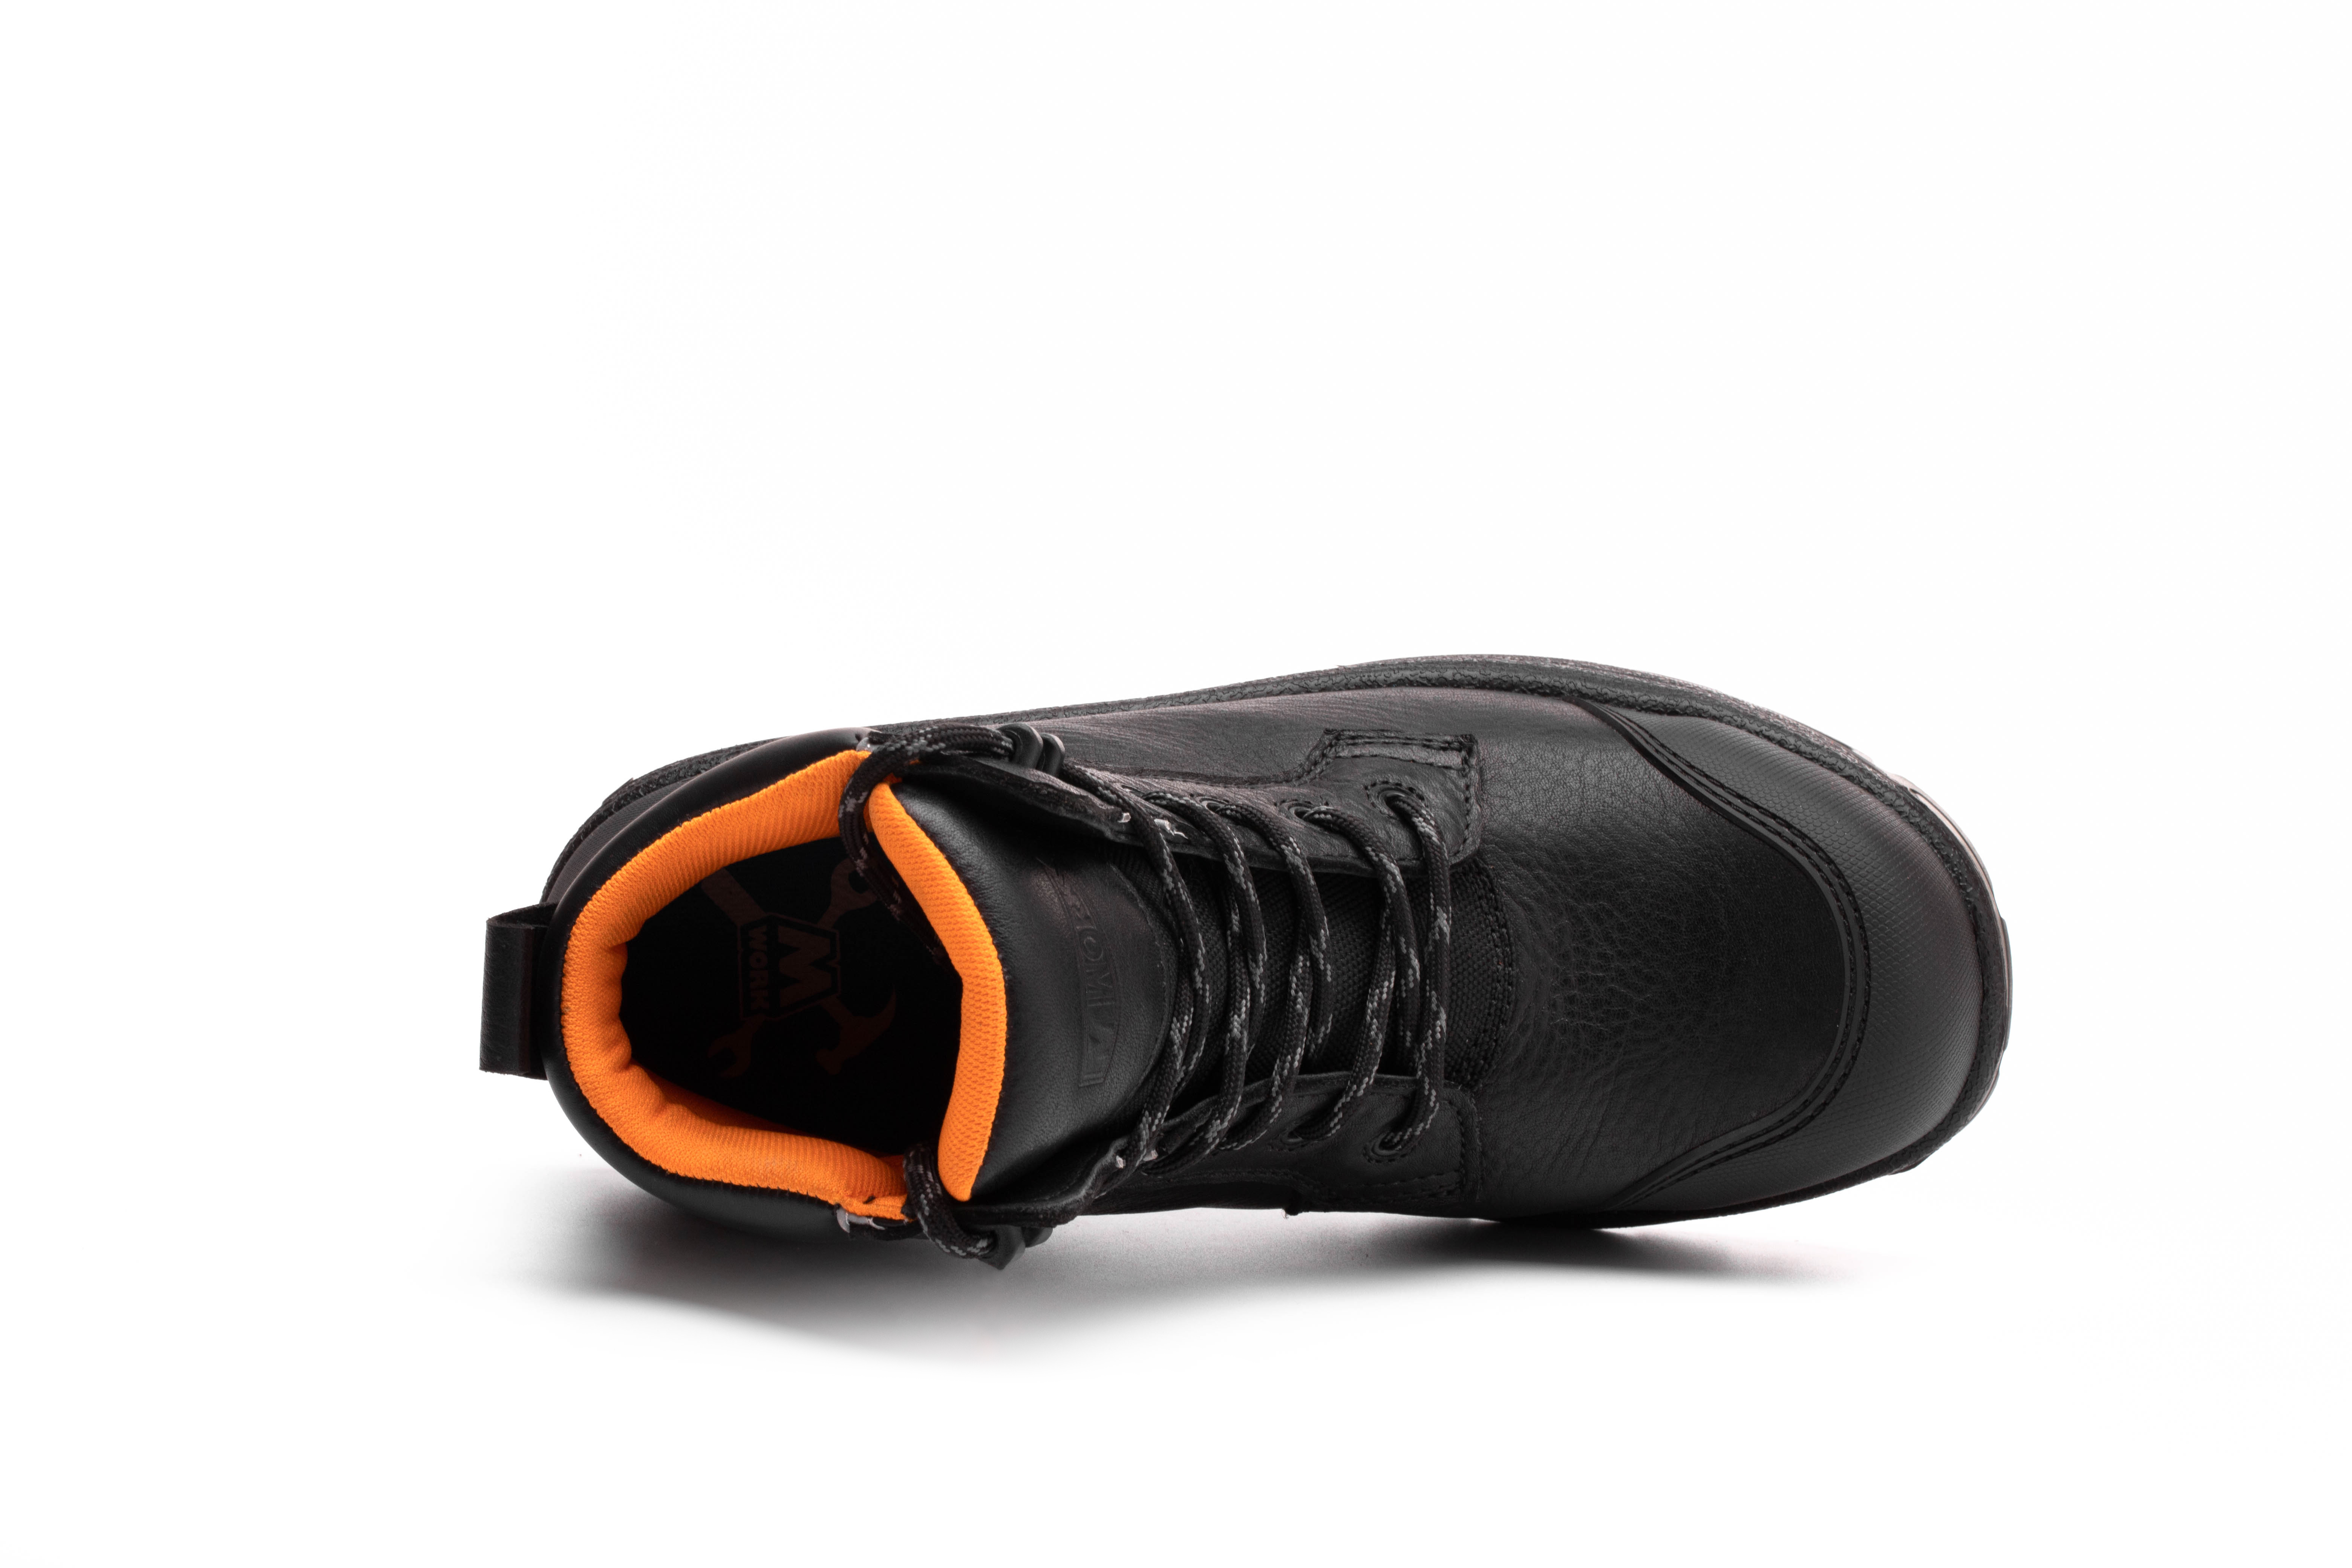 6 IN. Black Gadsden Composite toe&Plate Waterproof No Metal Work Boot